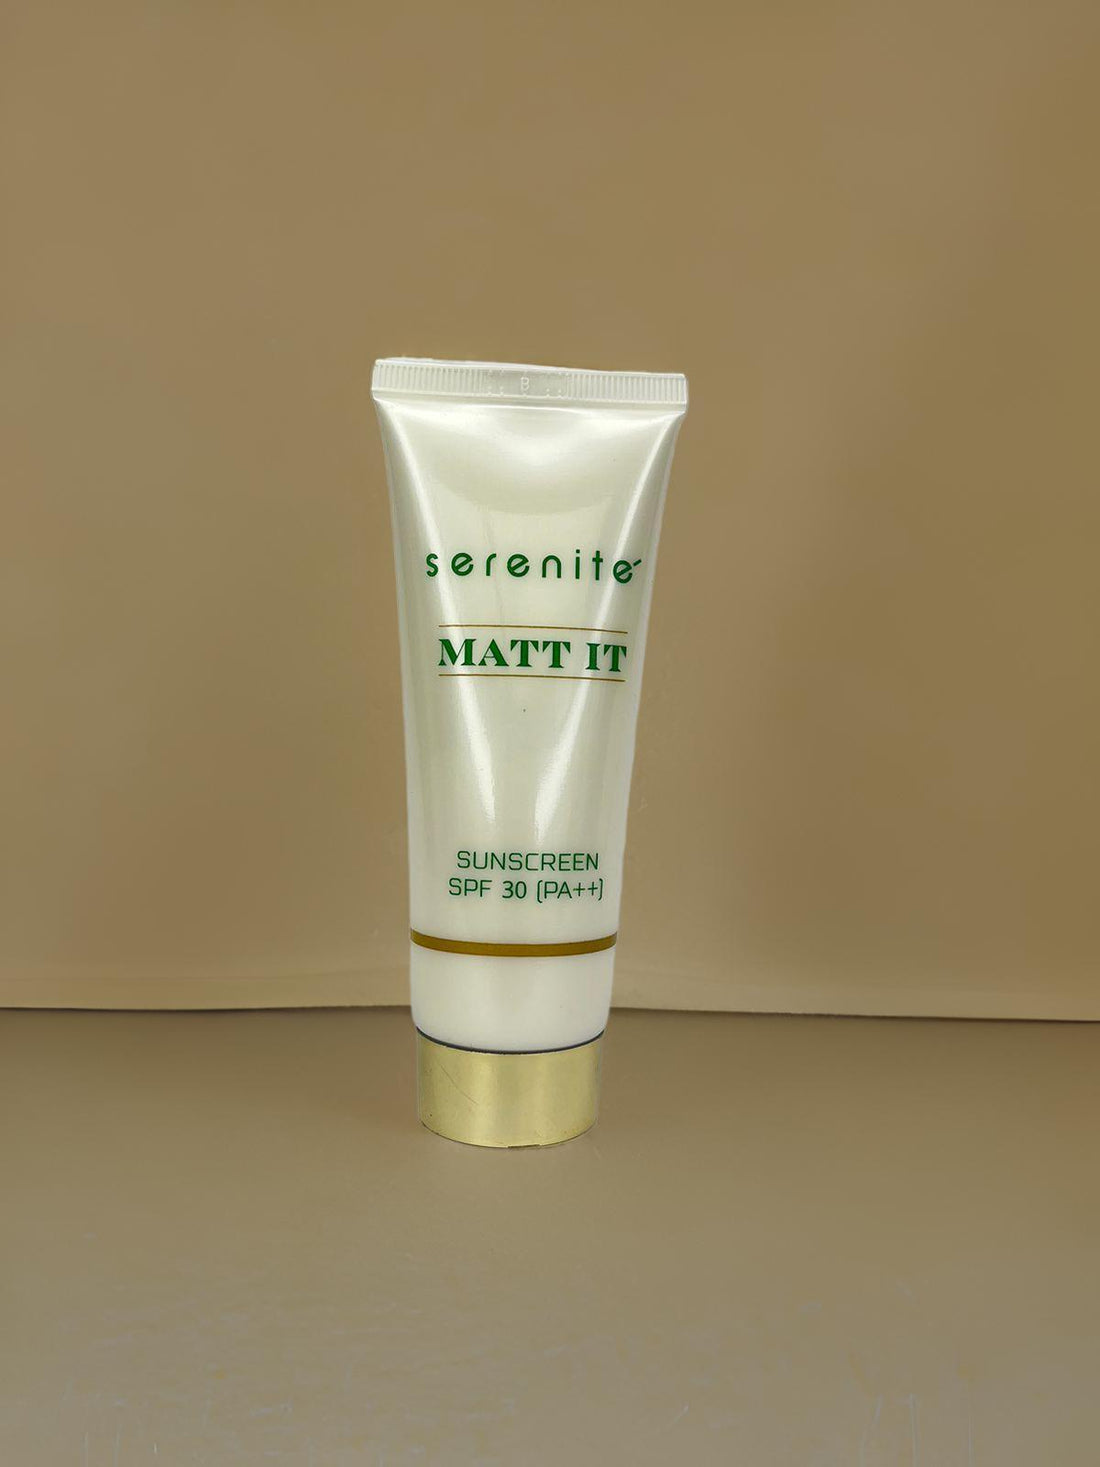 Serenite Matt It Sunscreen SPF 30 (P++) (50gm) - Eklipz